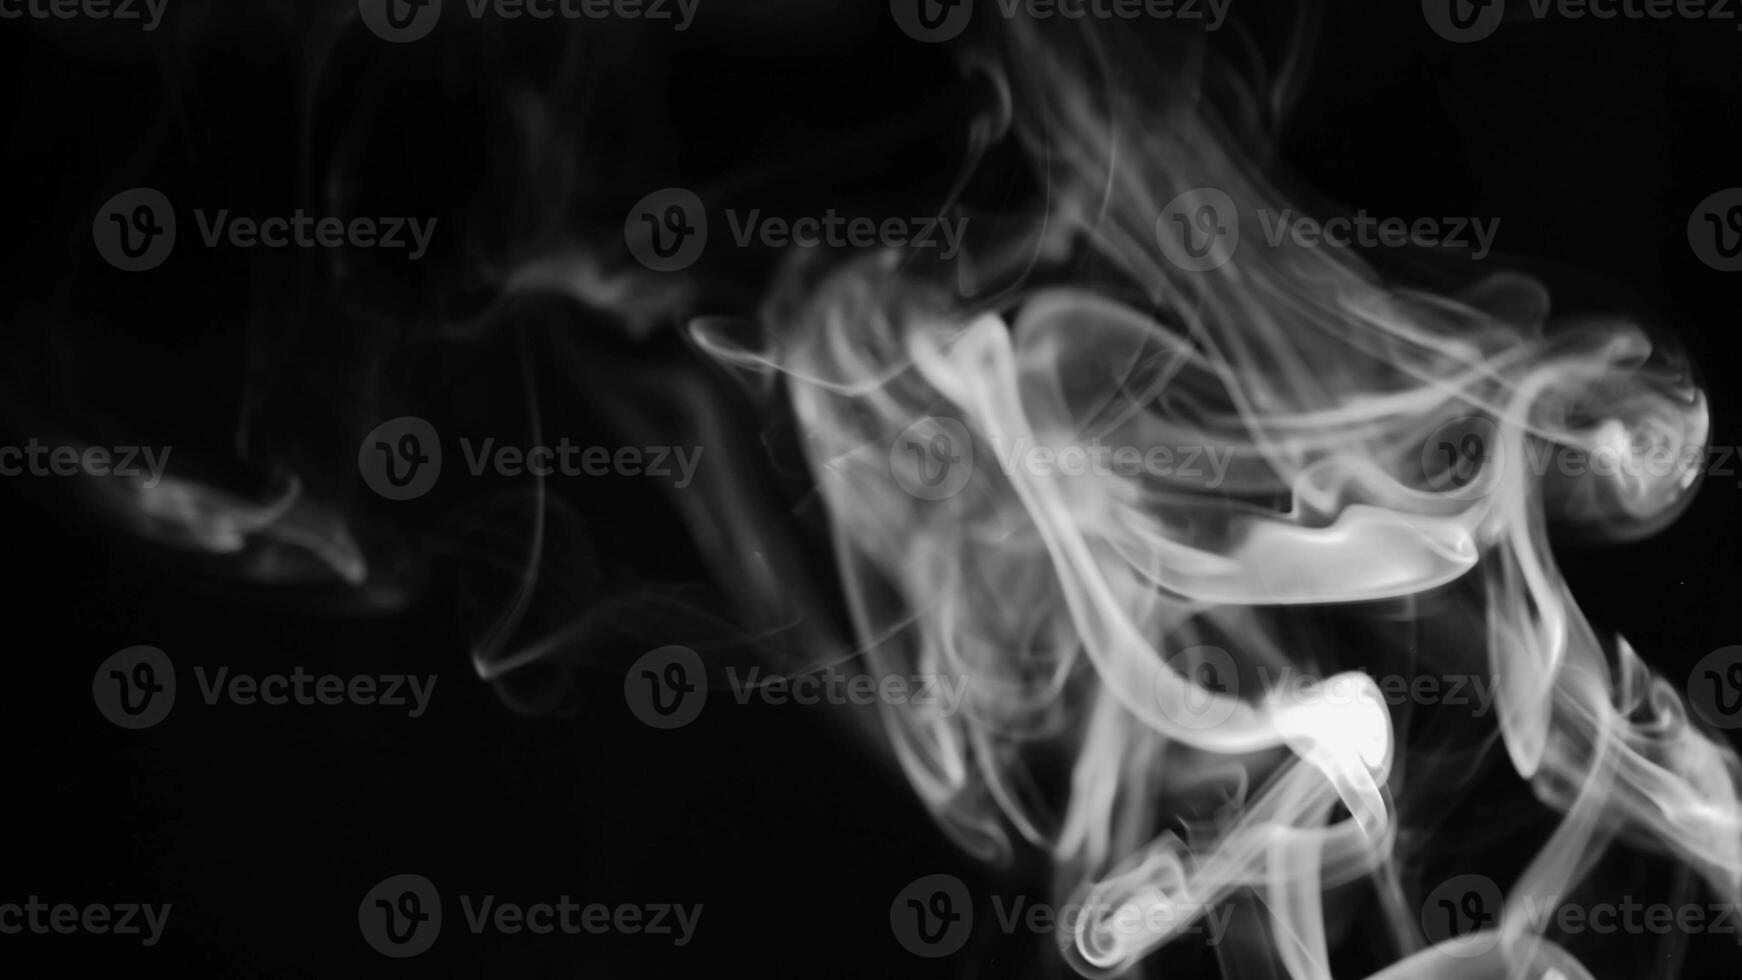 Weiß Rauch, Dampf , Nebel Wolke auf schwarz Hintergrund zum mit im Komposition und Overlay foto